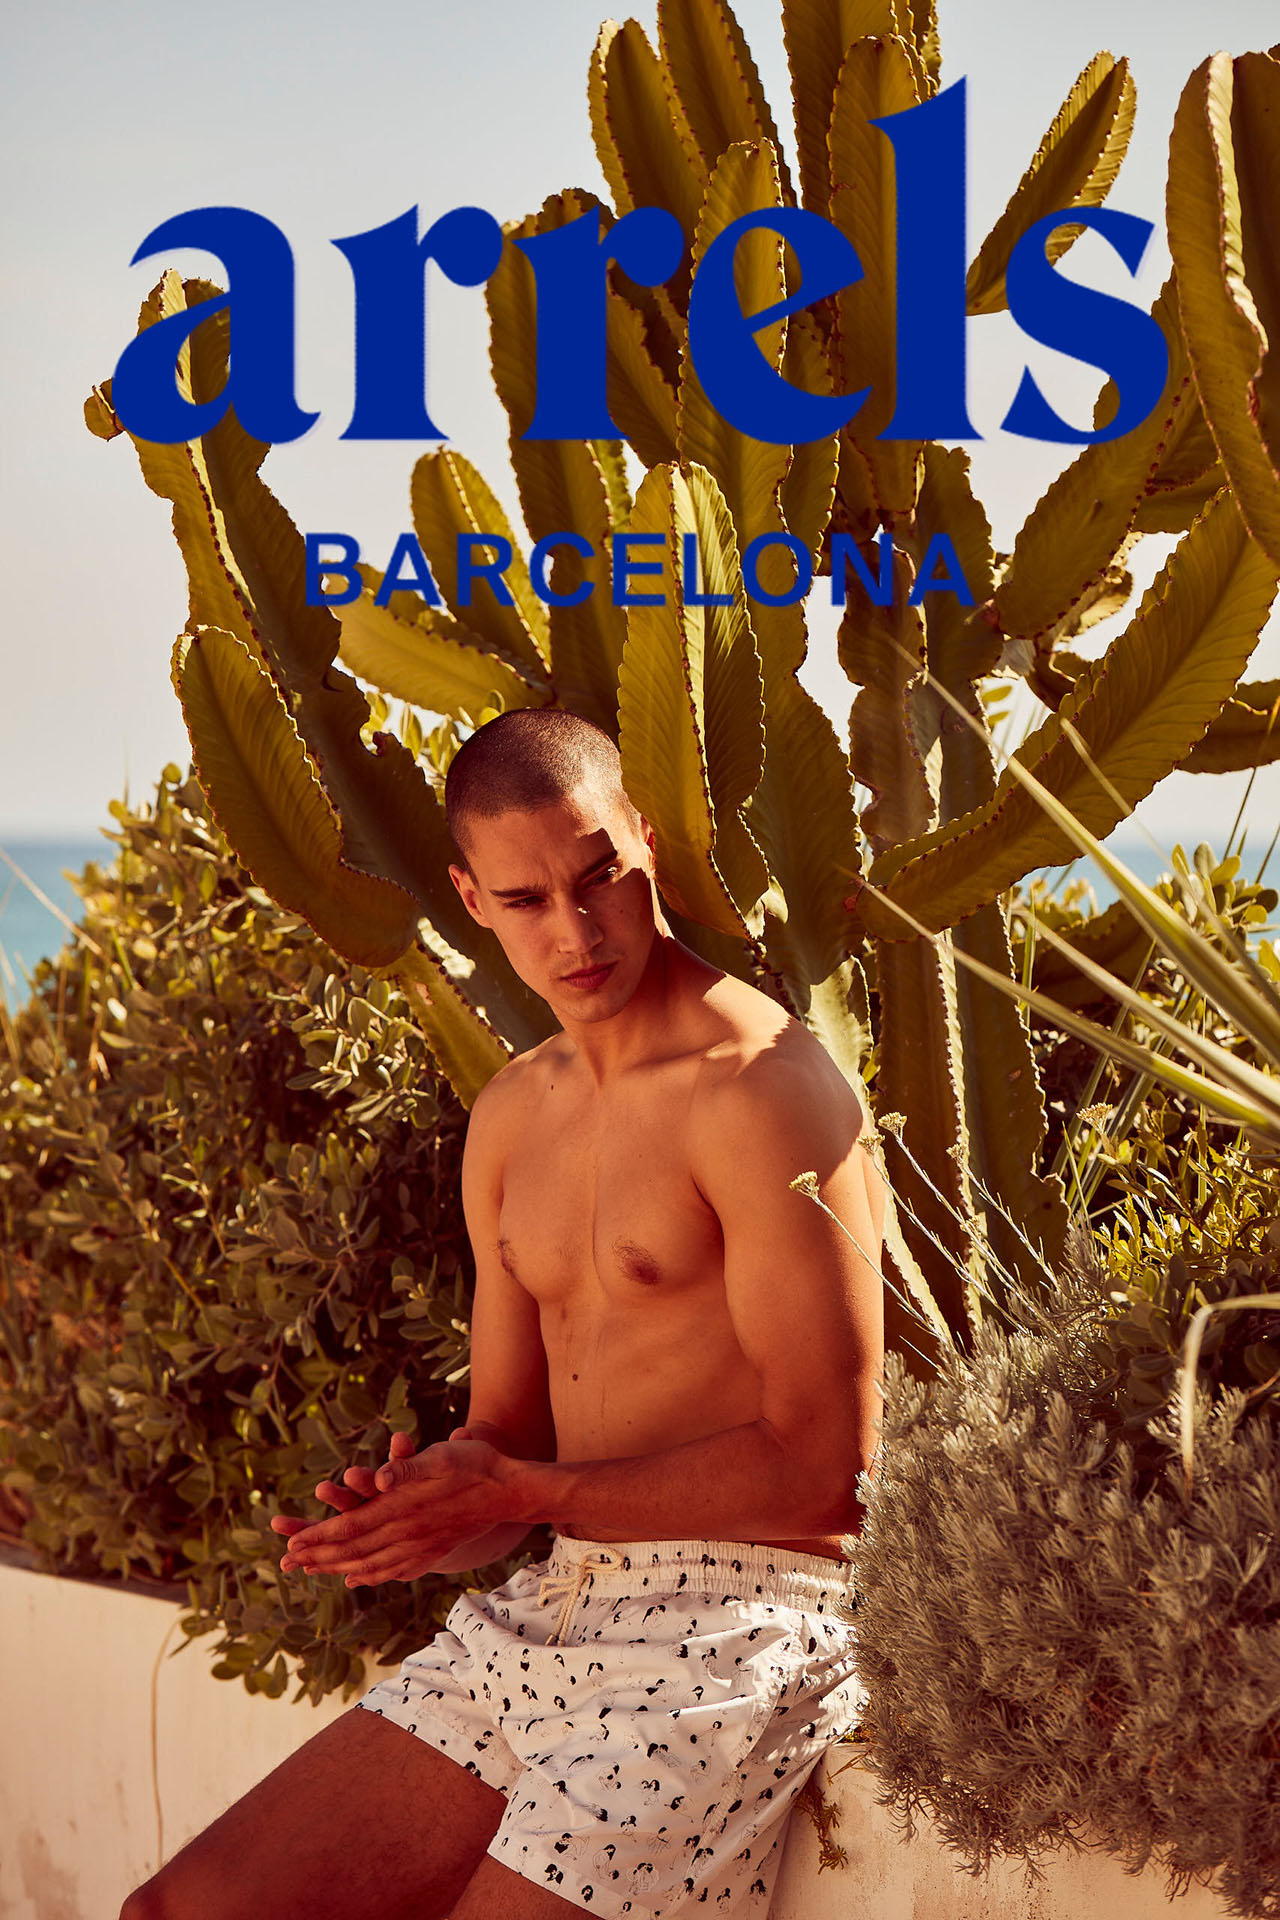 Campaña publicitaria realizada por la fotógrafa Alicia Aguilera junto a Enri Mür Studio para la marca Arrels Barcelona SS21.